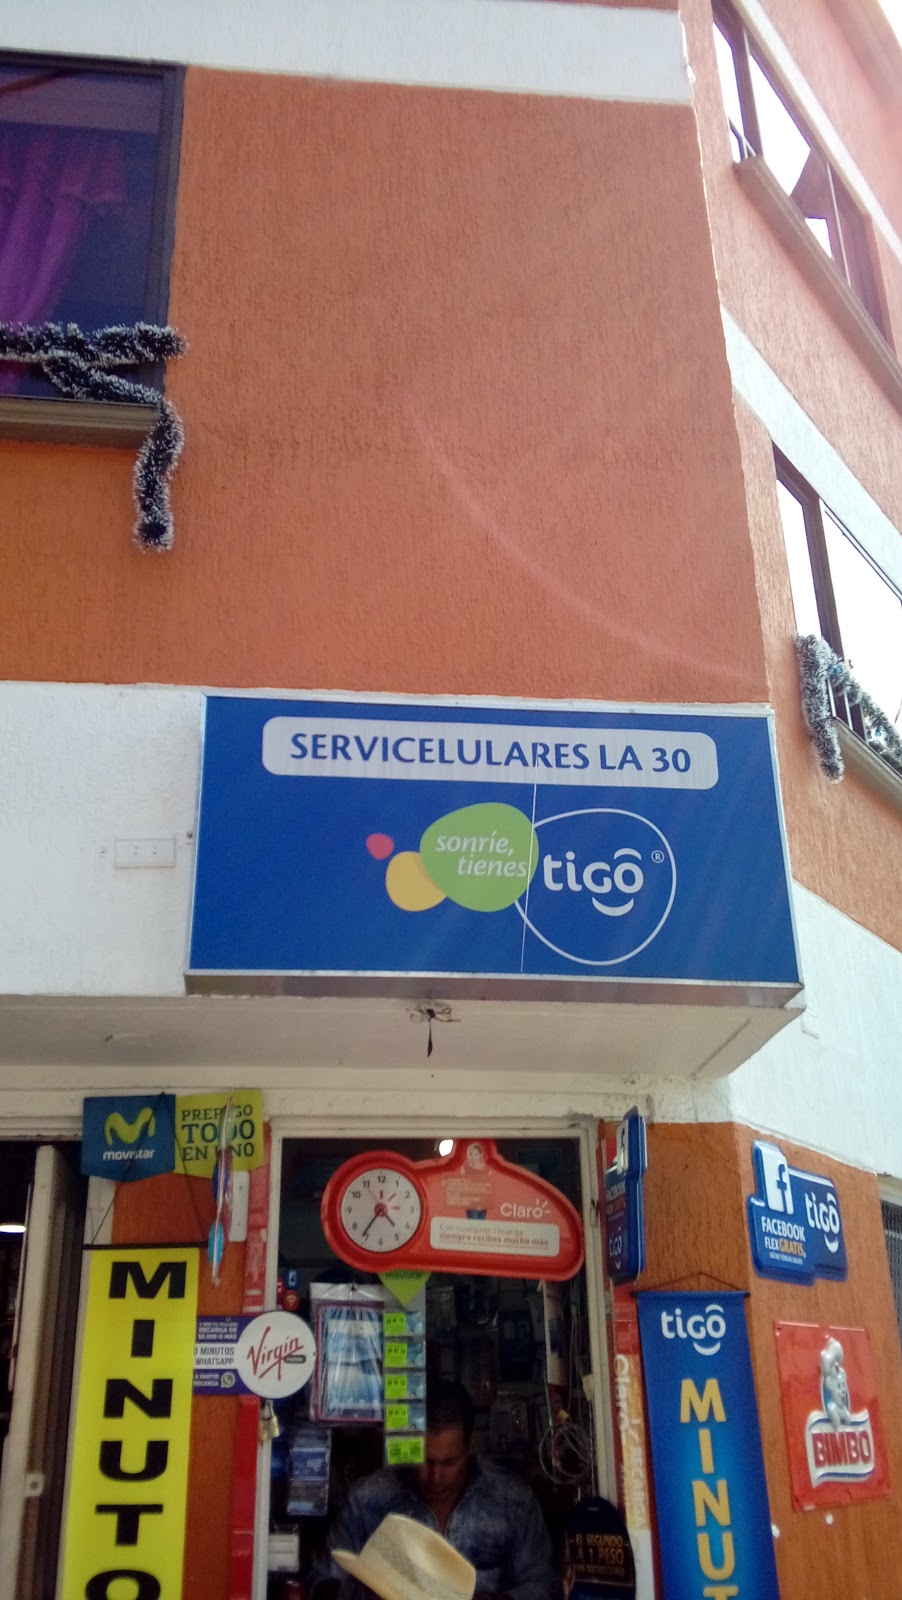 Servicelulares La 30